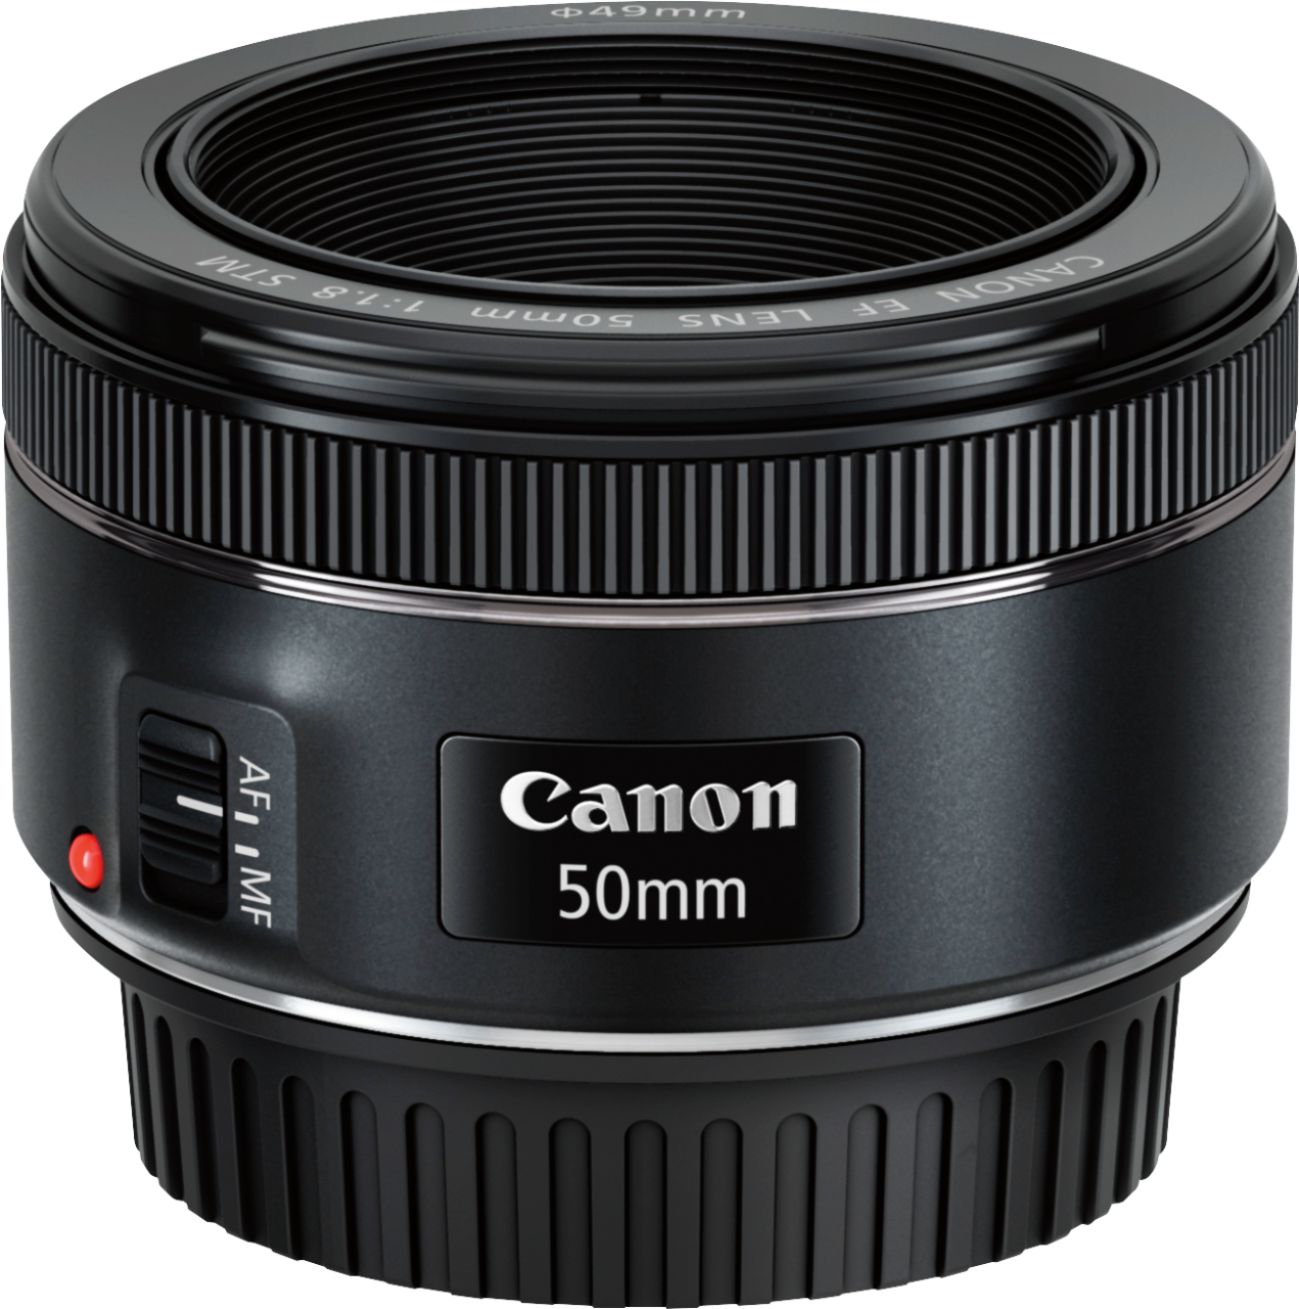 カメラ レンズ(単焦点) Canon EF 50mm f/1.8 STM Standard Lens Black 0570C002 - Best Buy